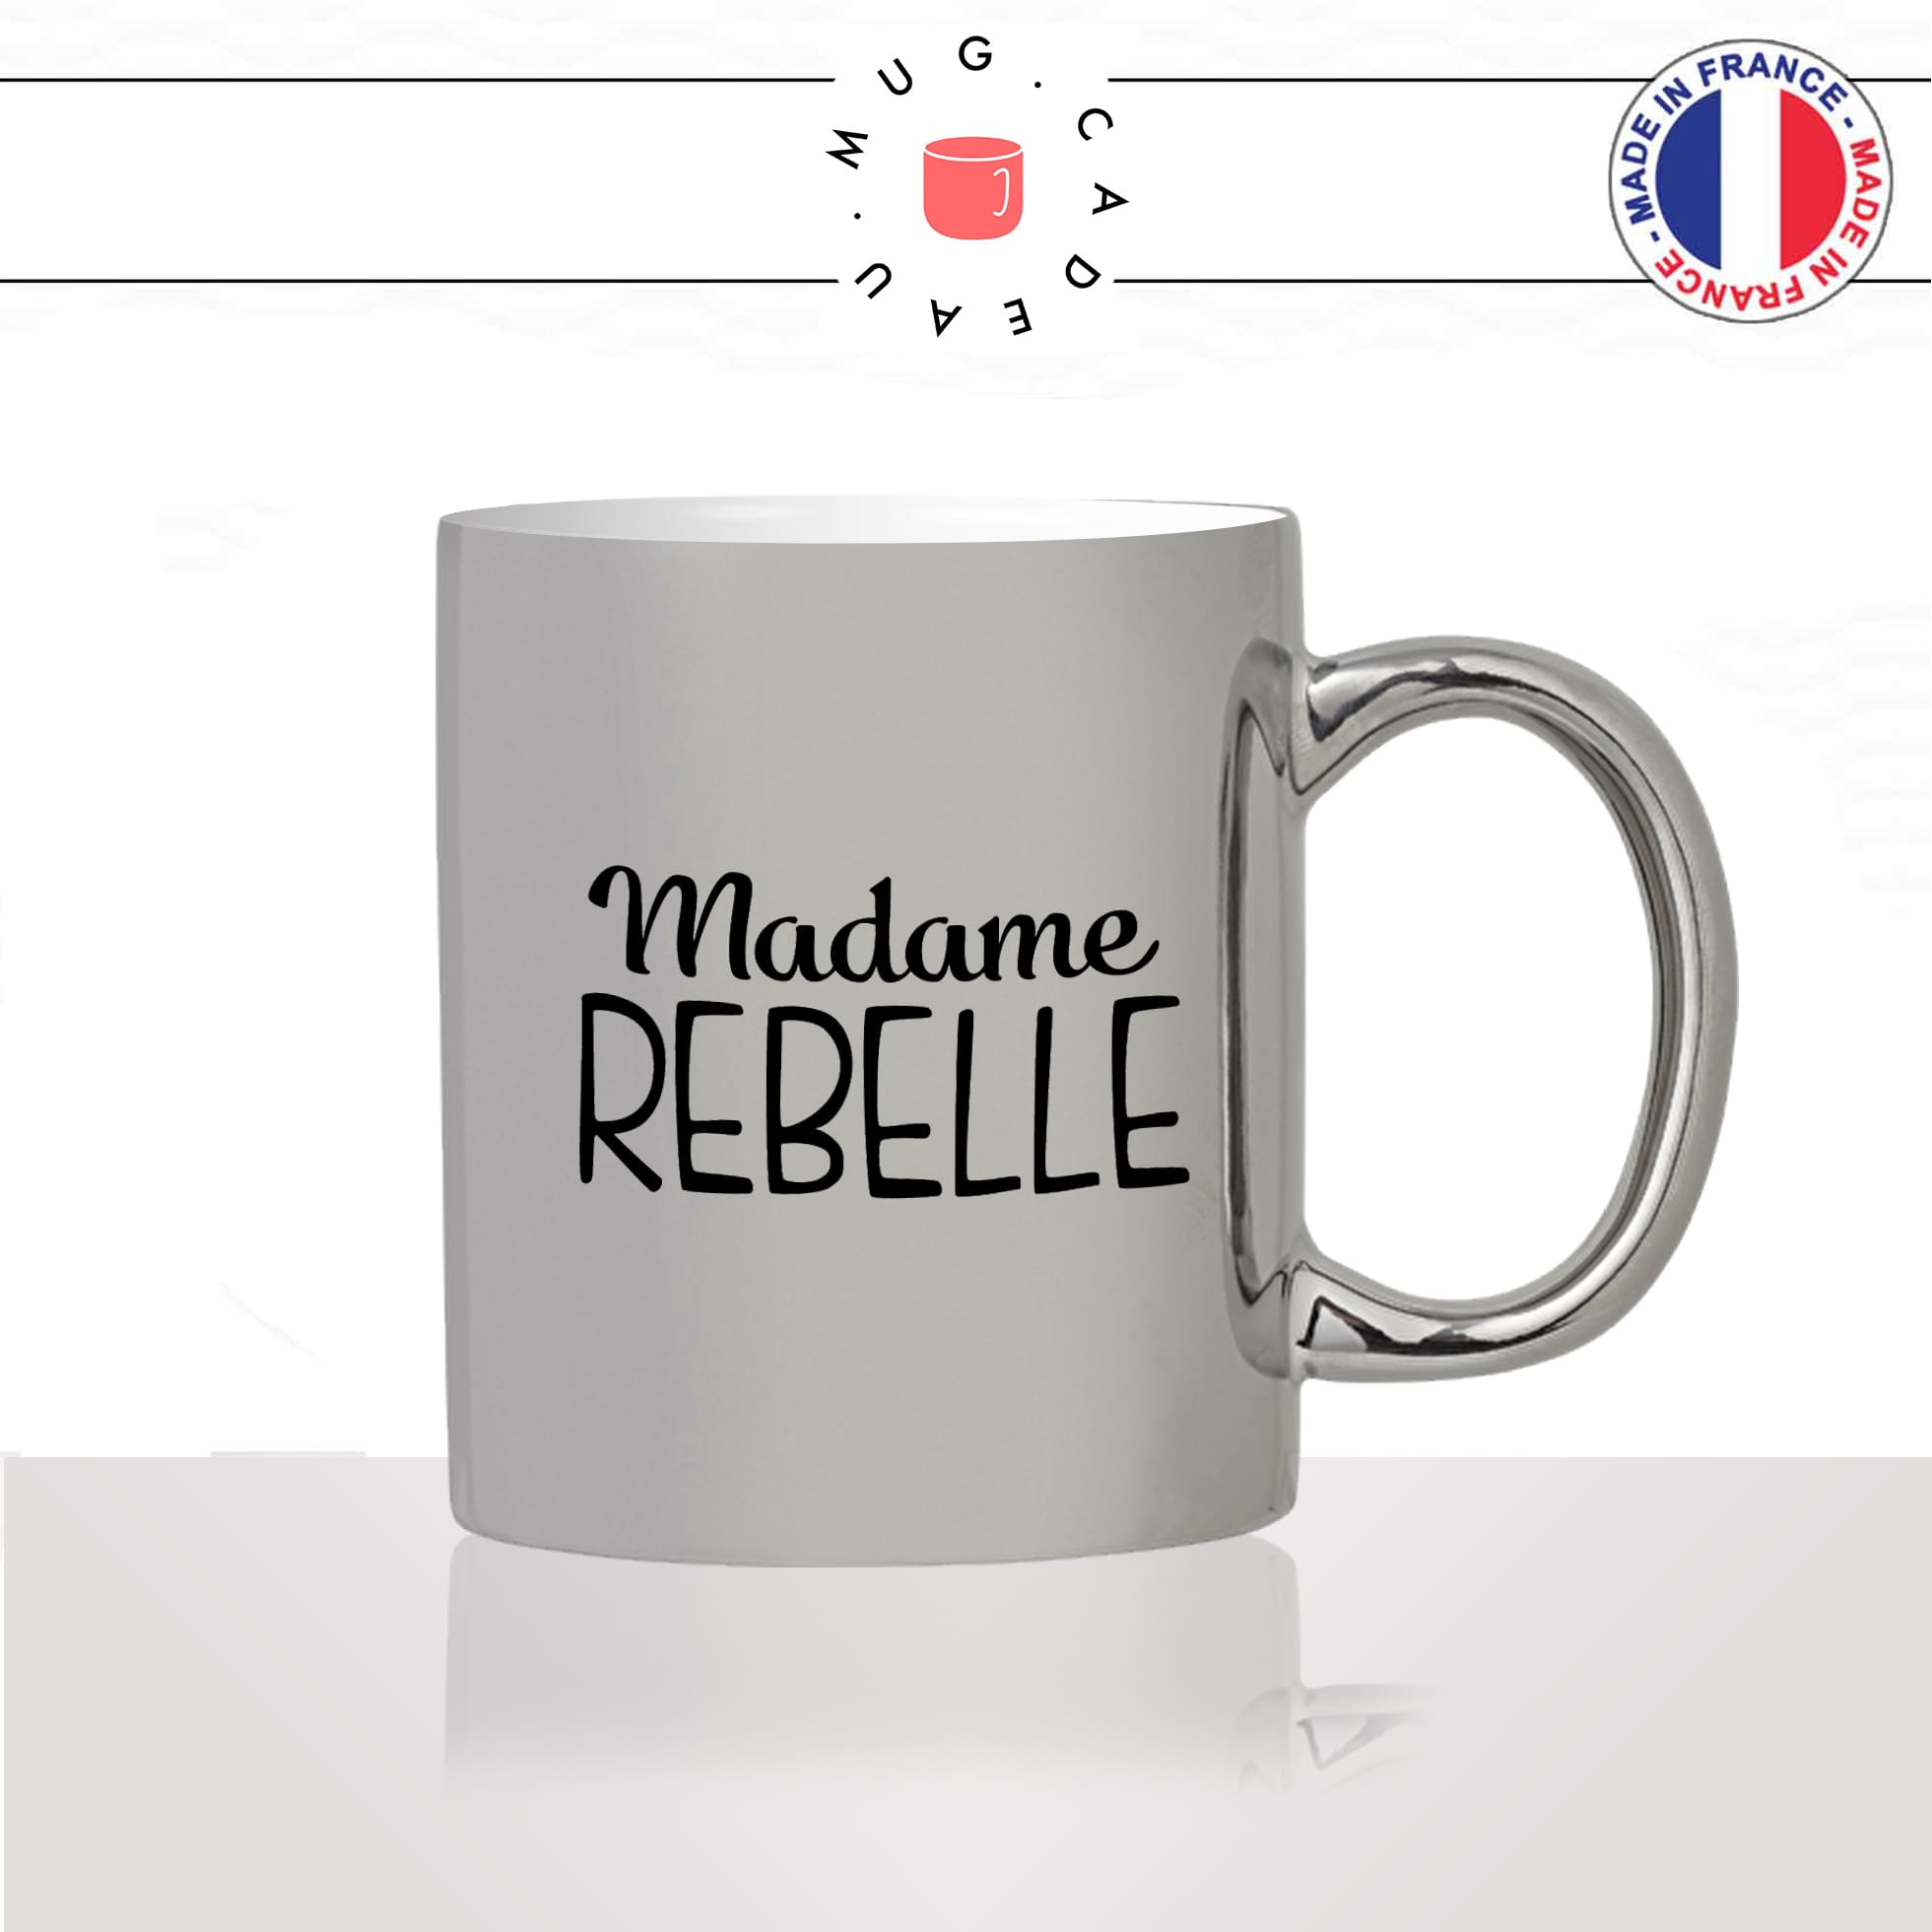 mug-tasse-argent-argenté-silver-femme-madame-rebelle-adolescente-ado-collegue-copine-humour-idée-cadeau-fun-cool-café-thé2